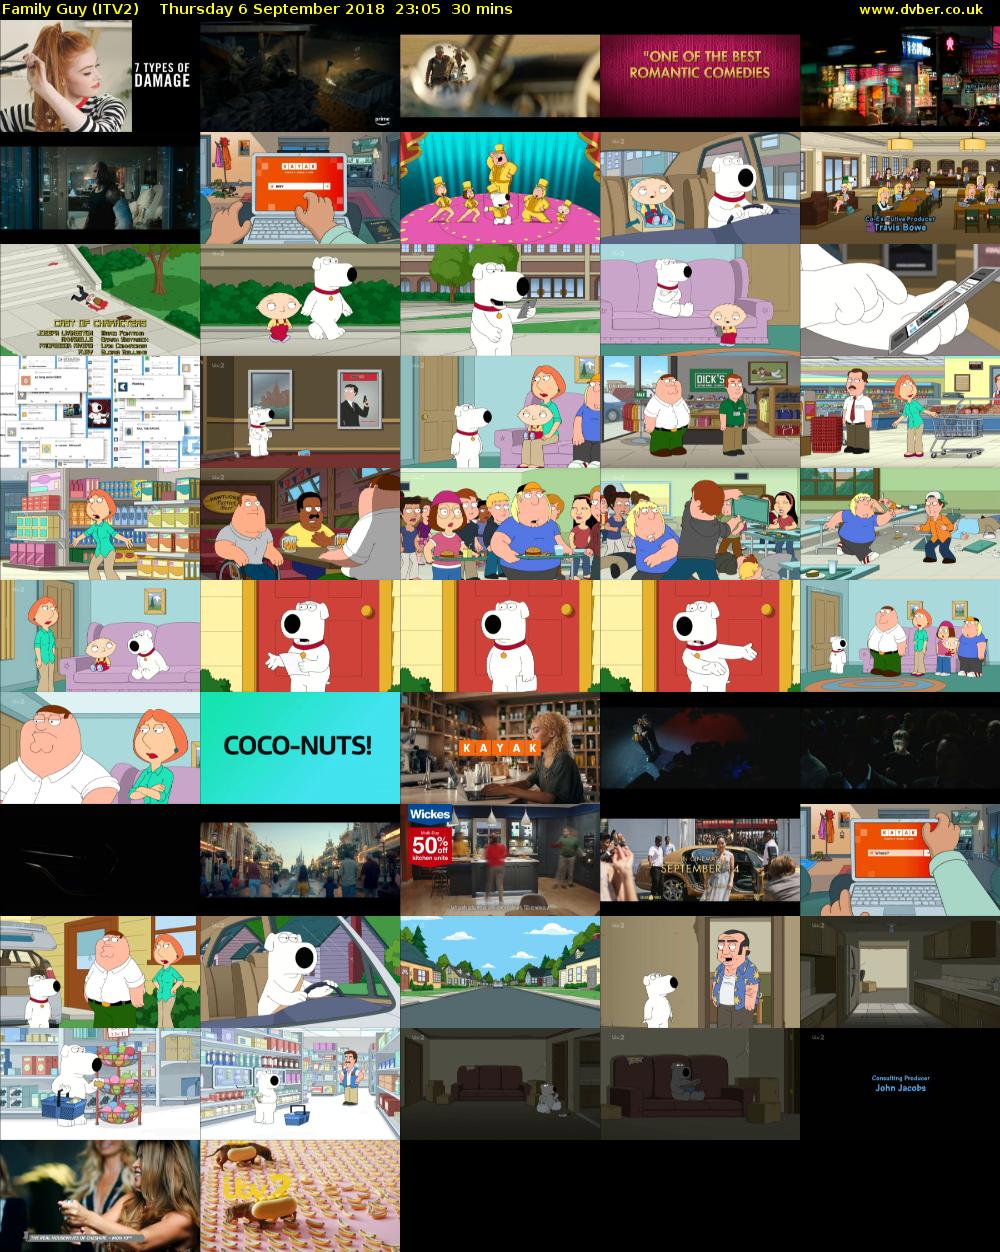 Family Guy (ITV2) Thursday 6 September 2018 23:05 - 23:35